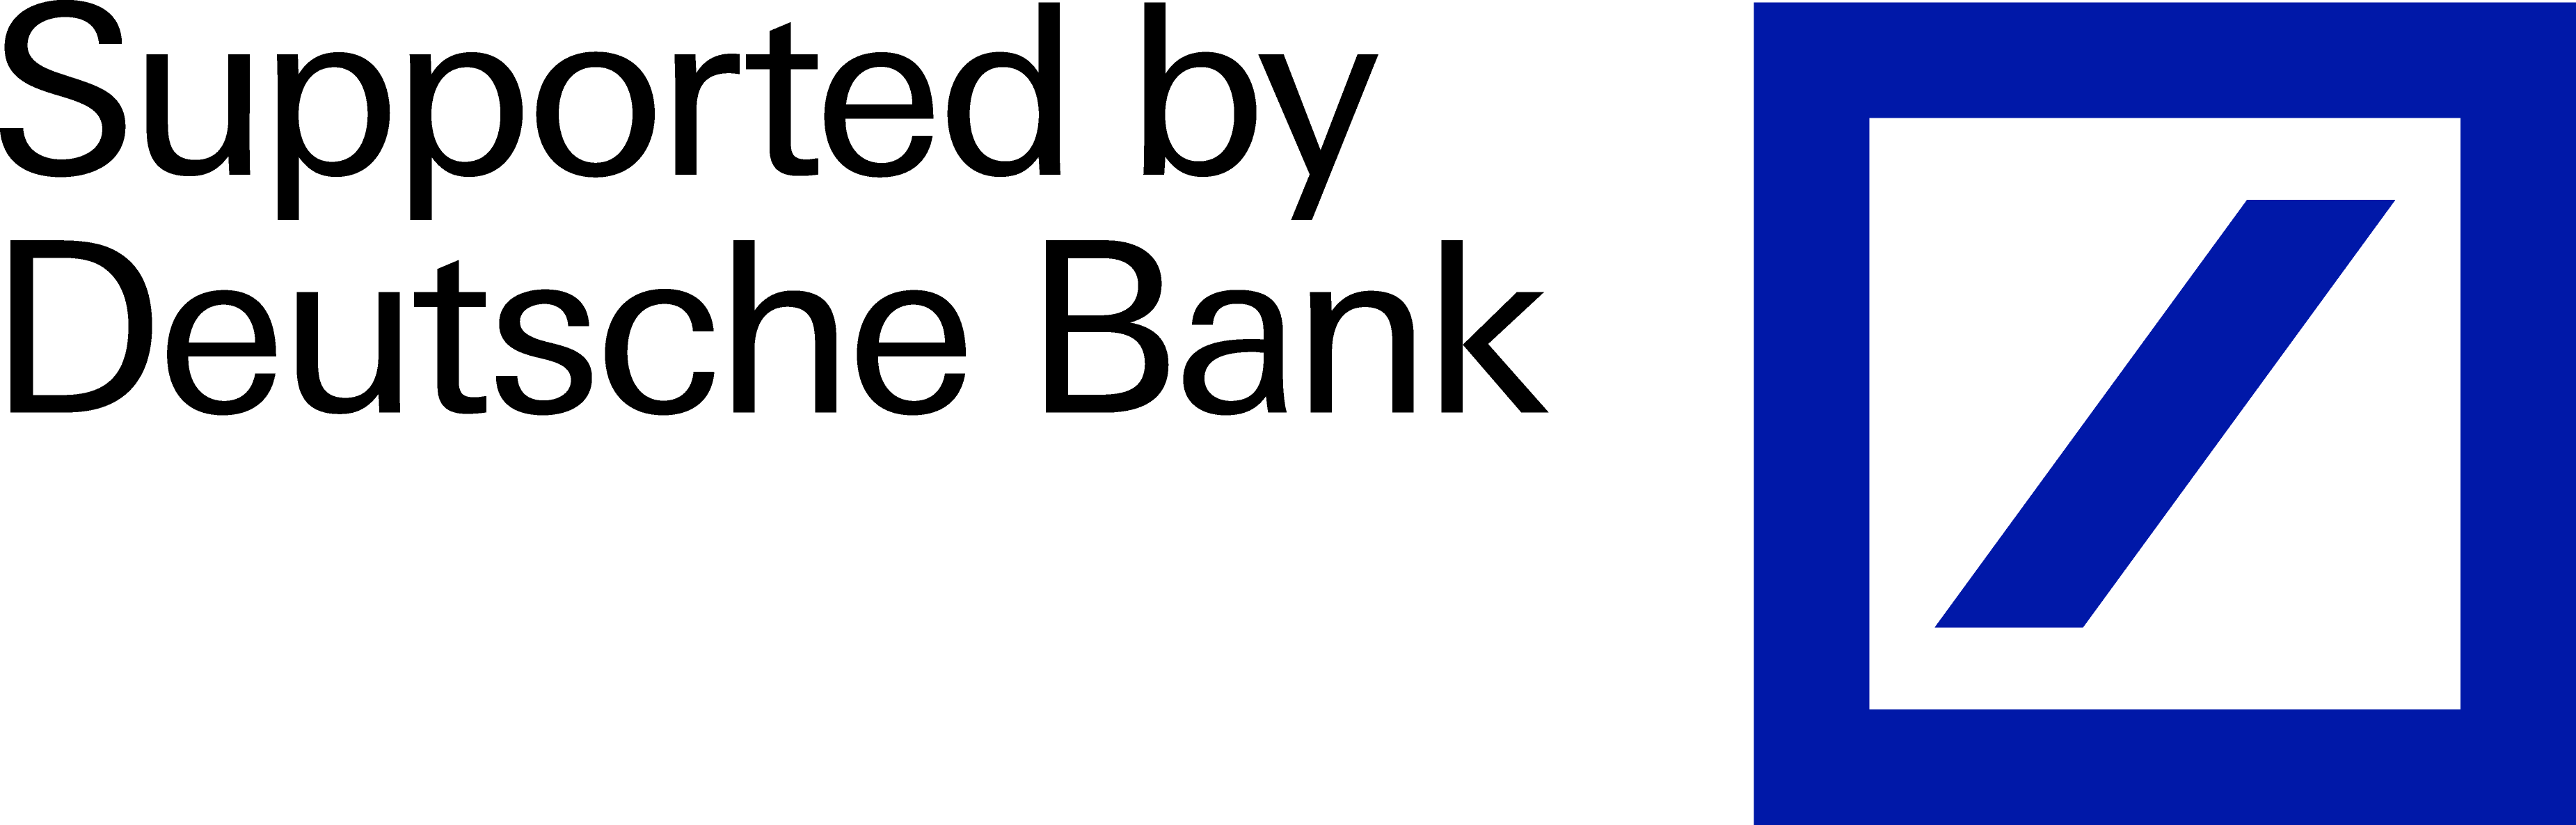 Deutsche Bank Logo - Deutsche Bank Clipart (3702x1185), Png Download